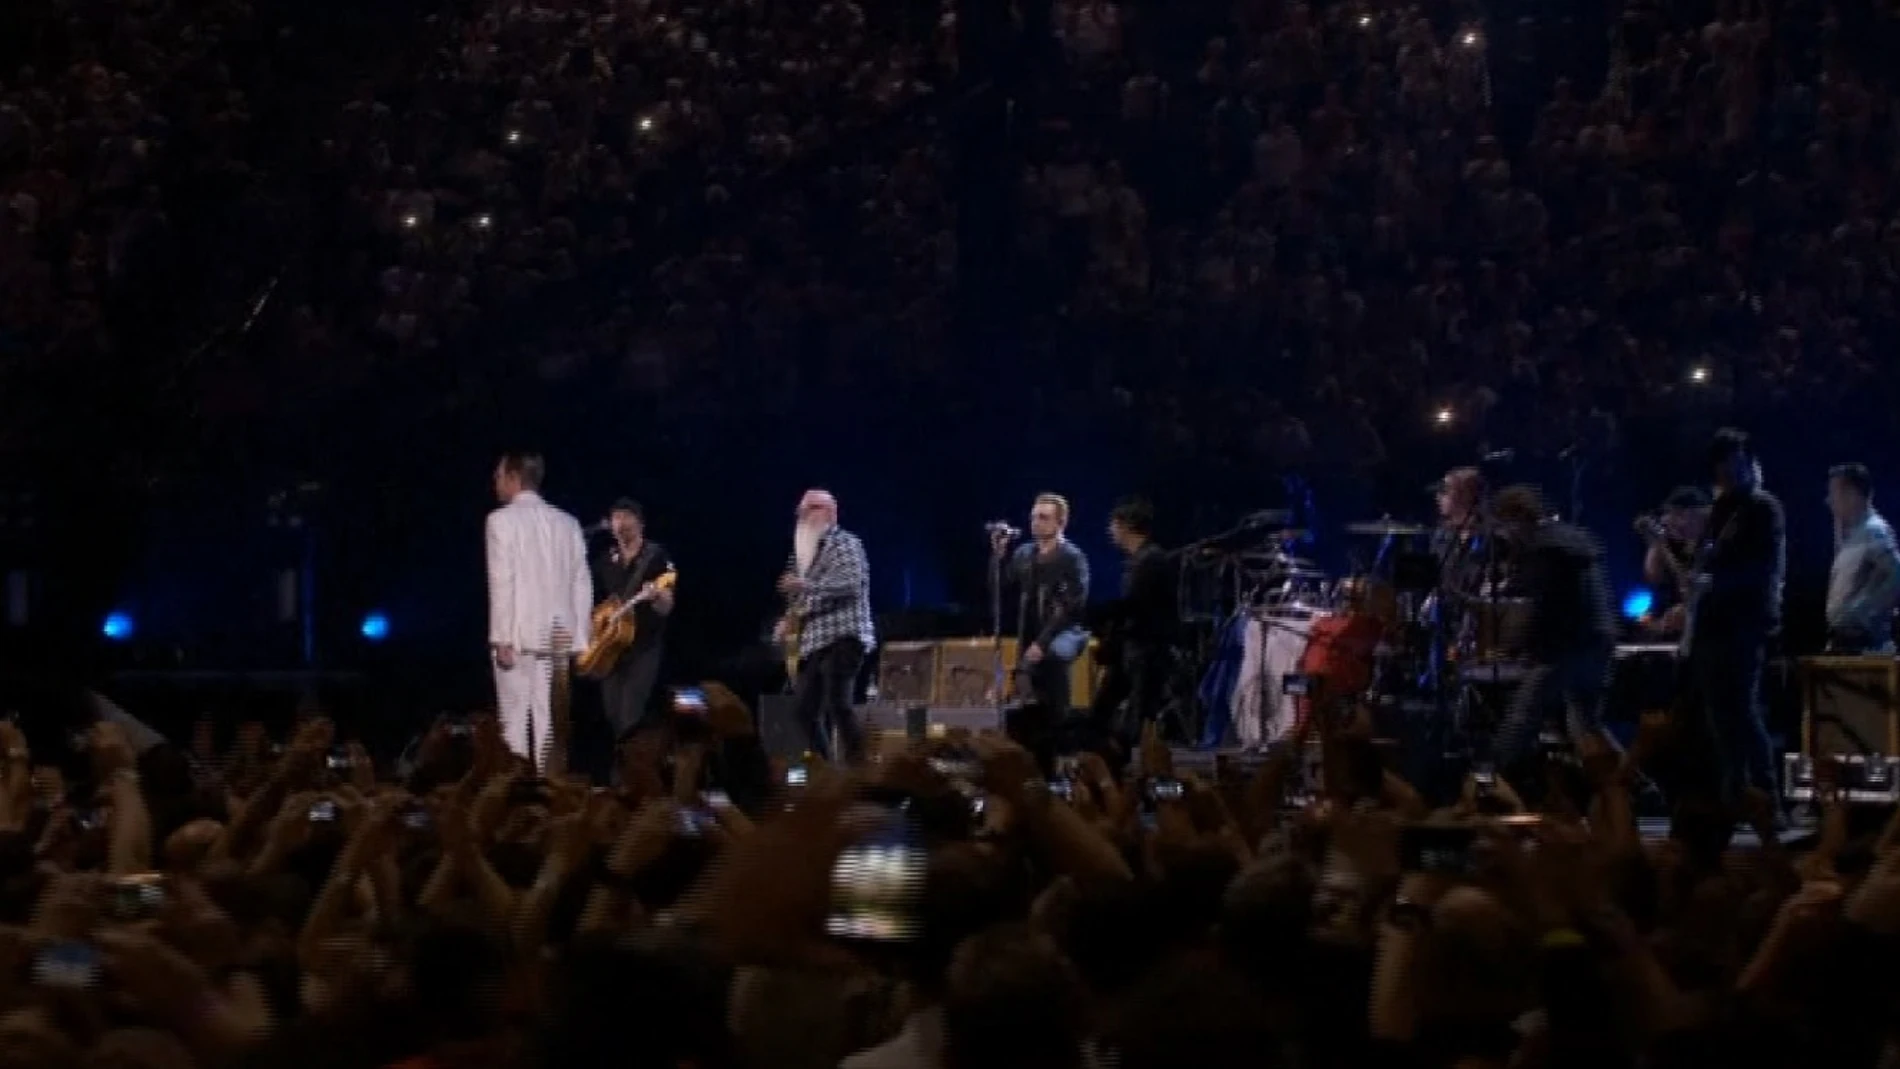 Concierto de U2 en París